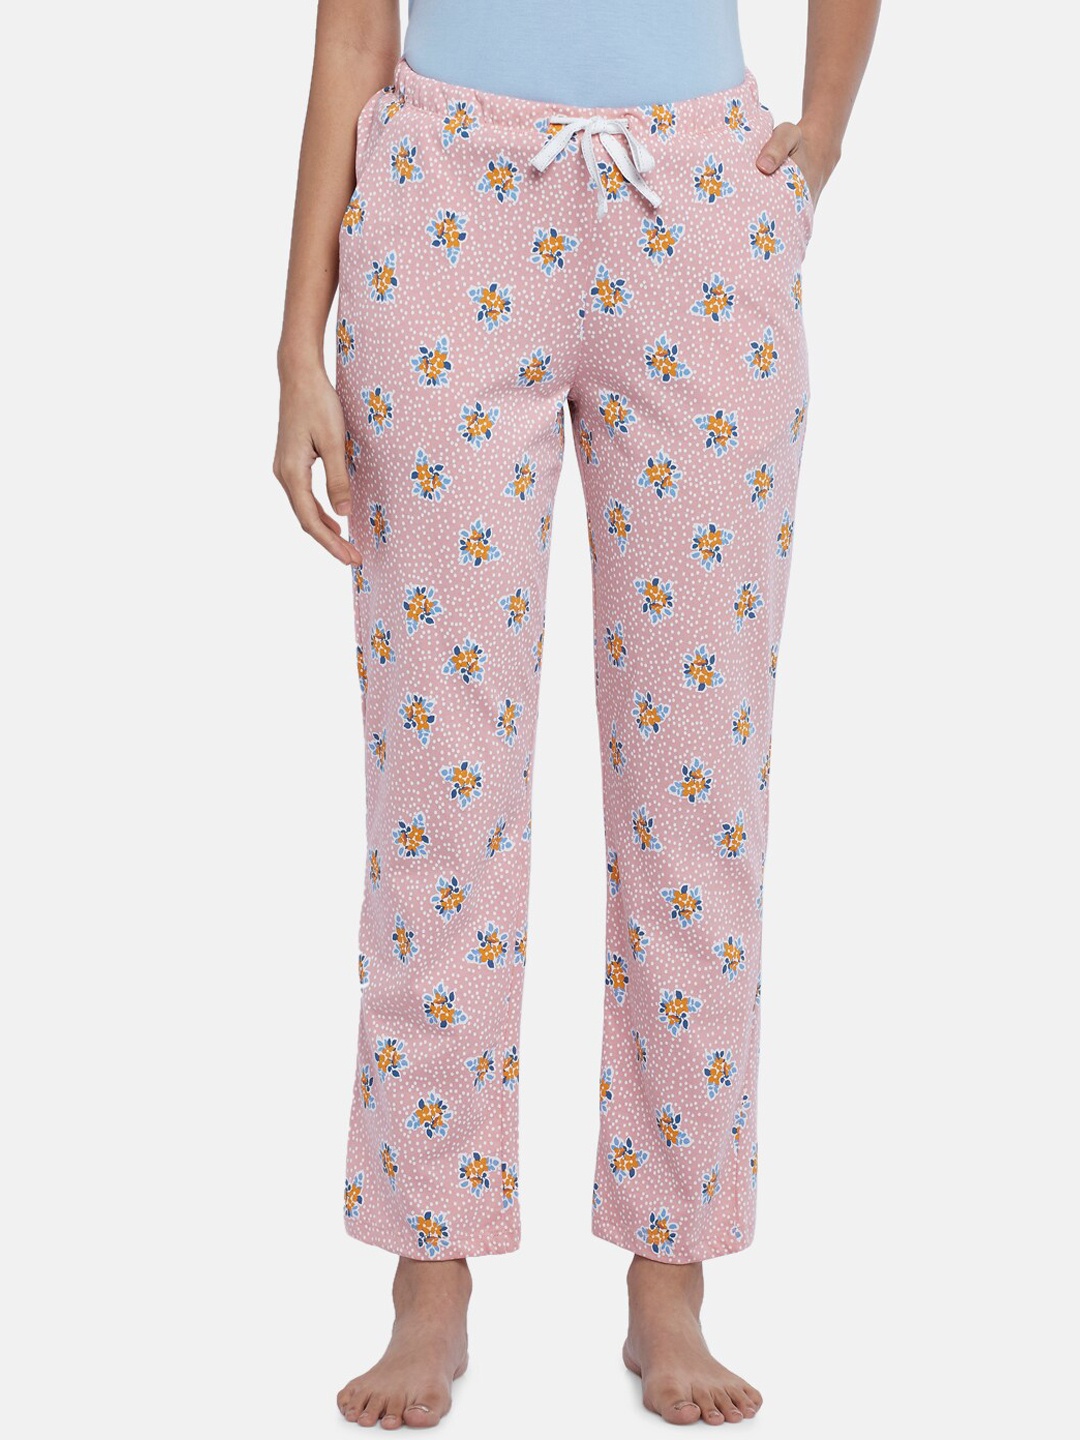 

Dreamz by Pantaloons Women Pink Printed Cotton Lounge Pants